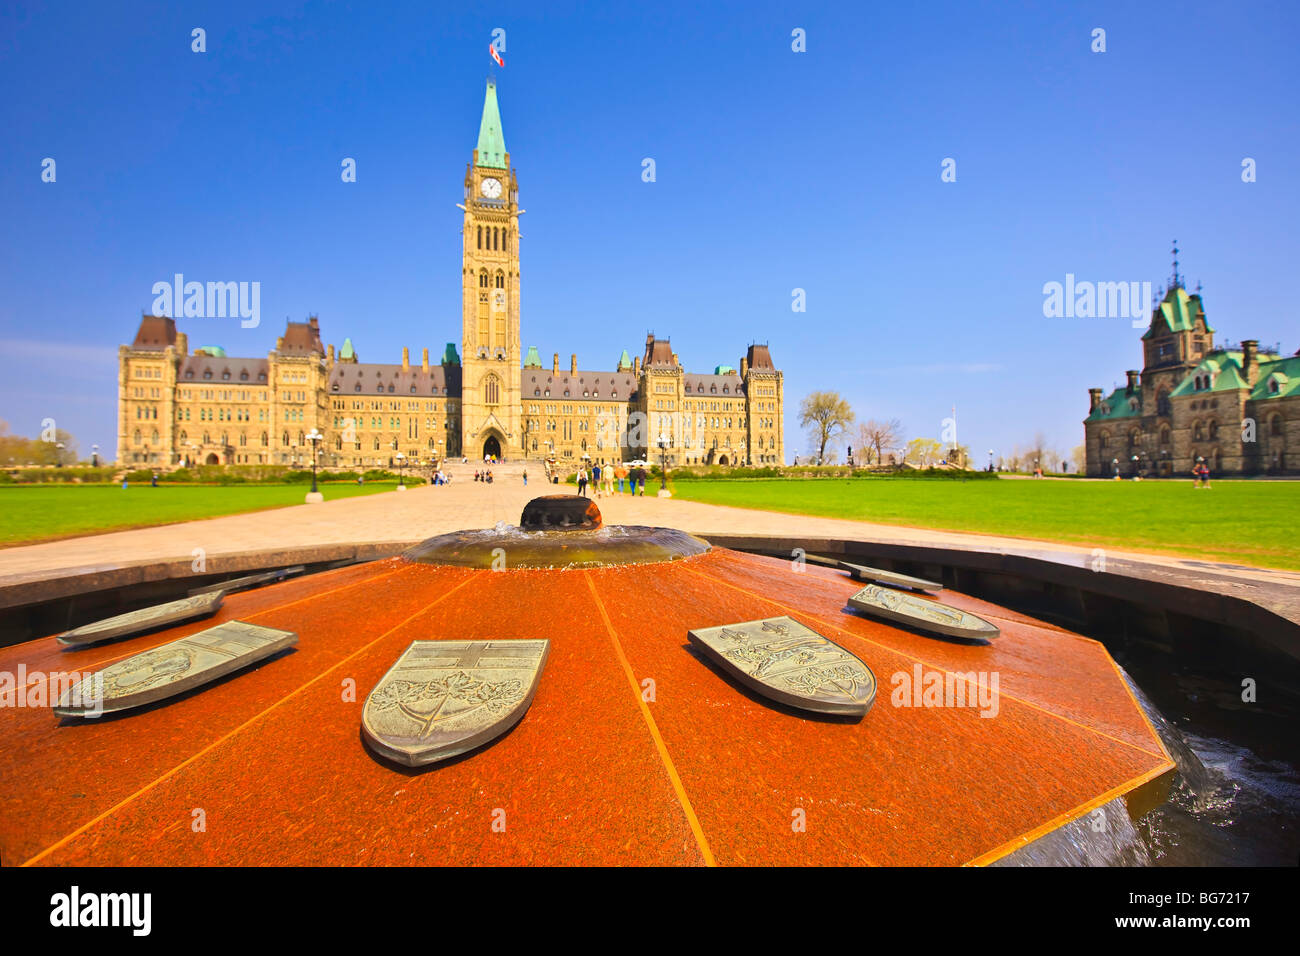 Zentrum-Block und Peace Tower das Parlamentsgebäude und die Centennial Flame, Parliament Hill, Ottawa, Ontario, Kanada. Stockfoto